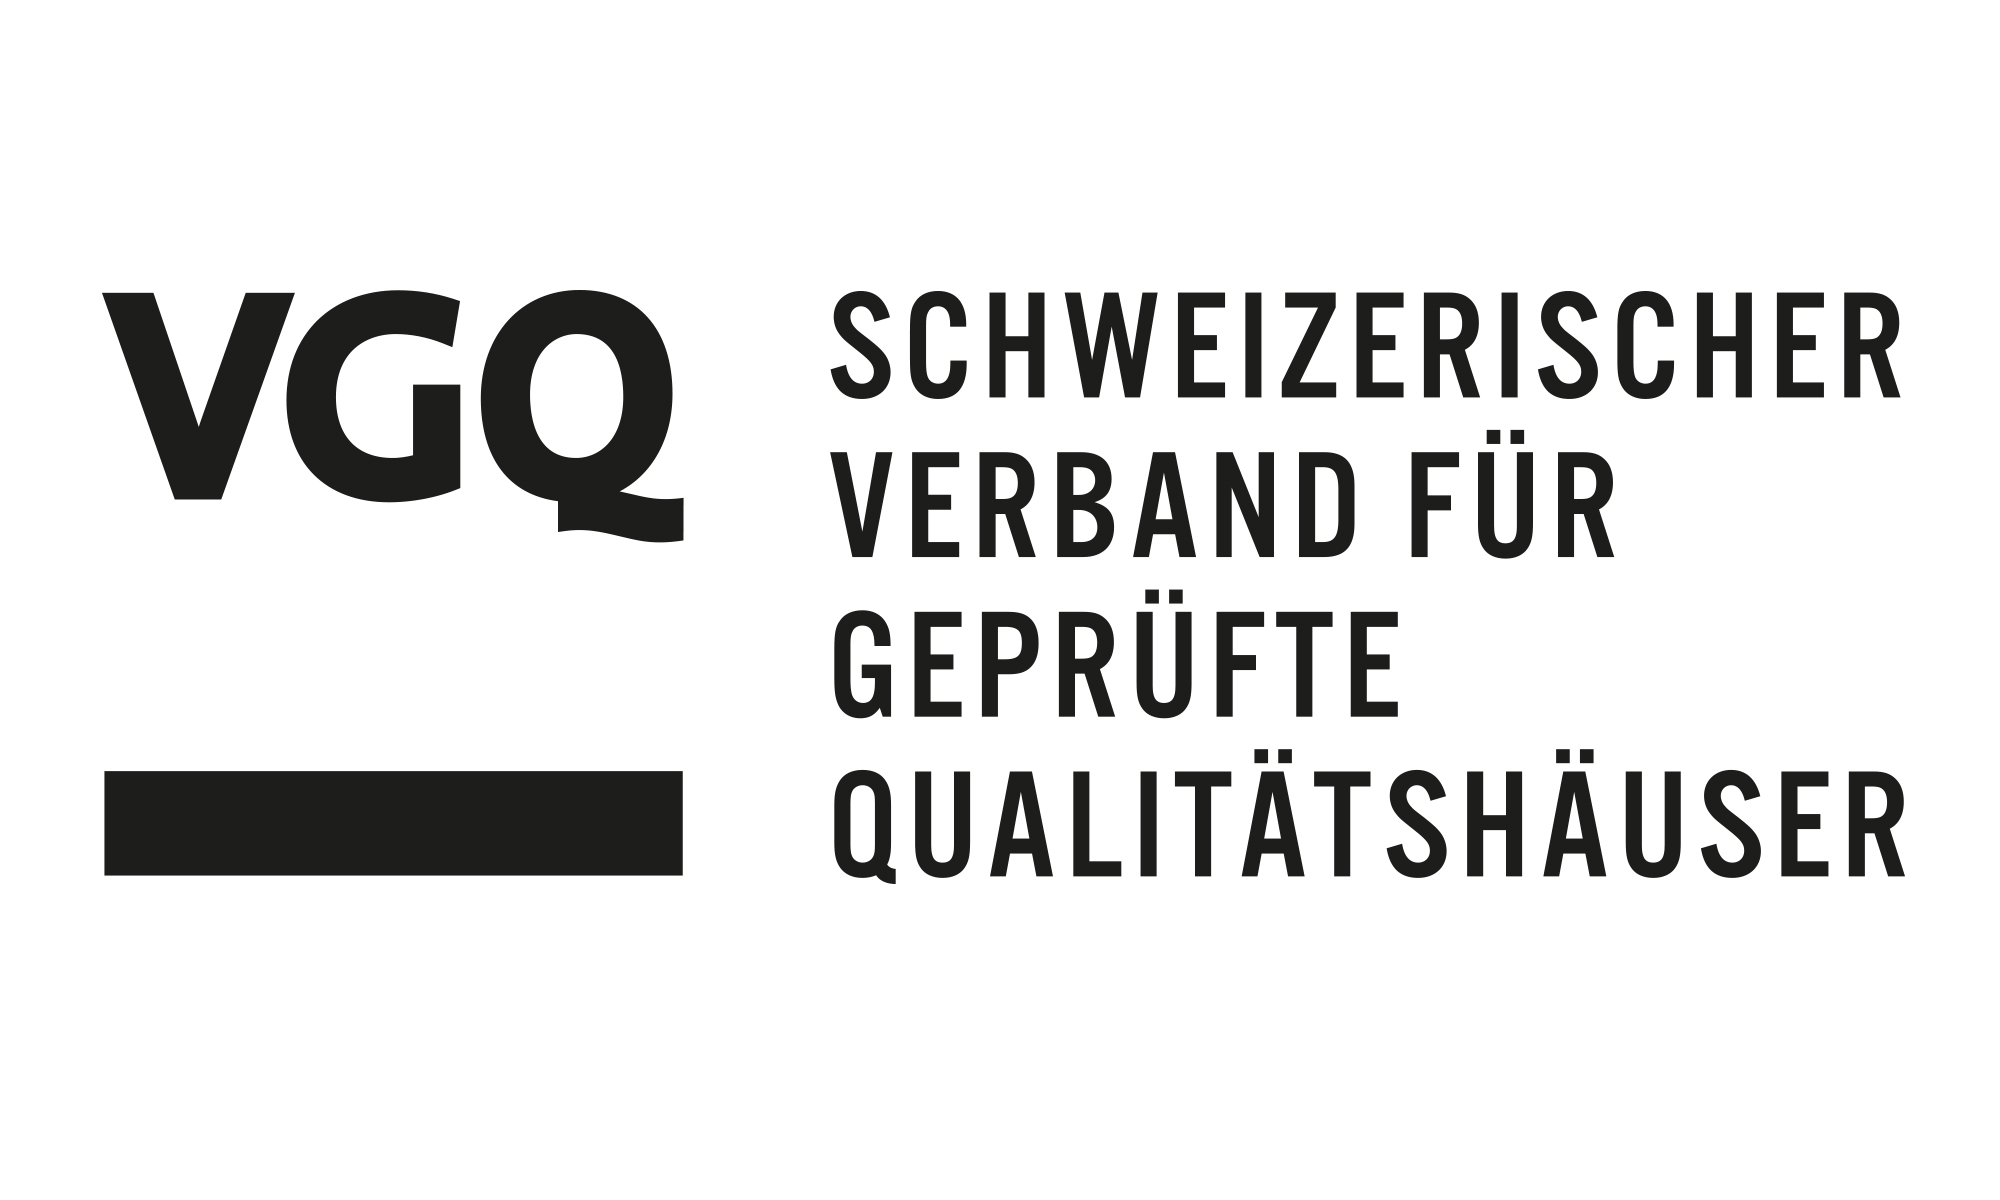 Abbildung des Labes des VGQ vom schweizerischen Verband für geprüfte Qualitätshäuser